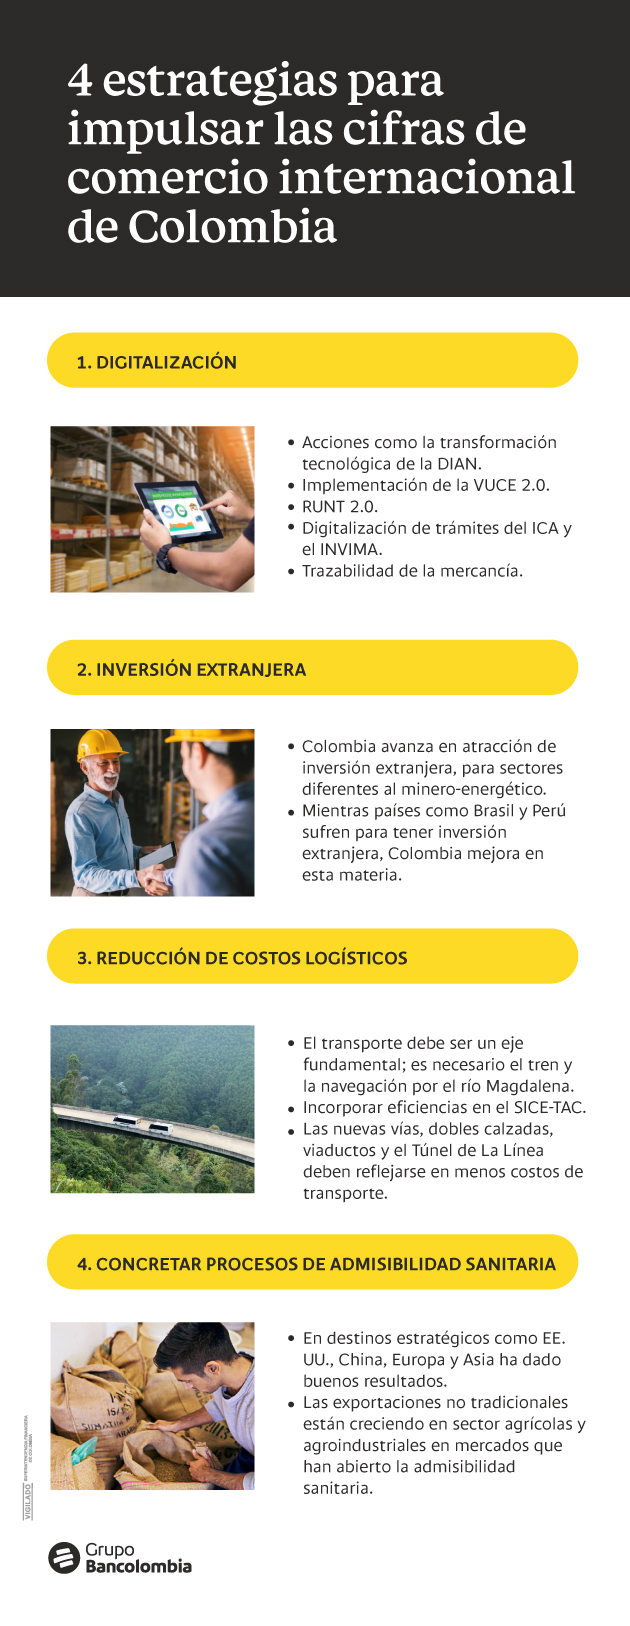 Cuatro medidas para mejorar los indicadores del comercio internacional de Colombia y acercar al país a las cifras de la región.